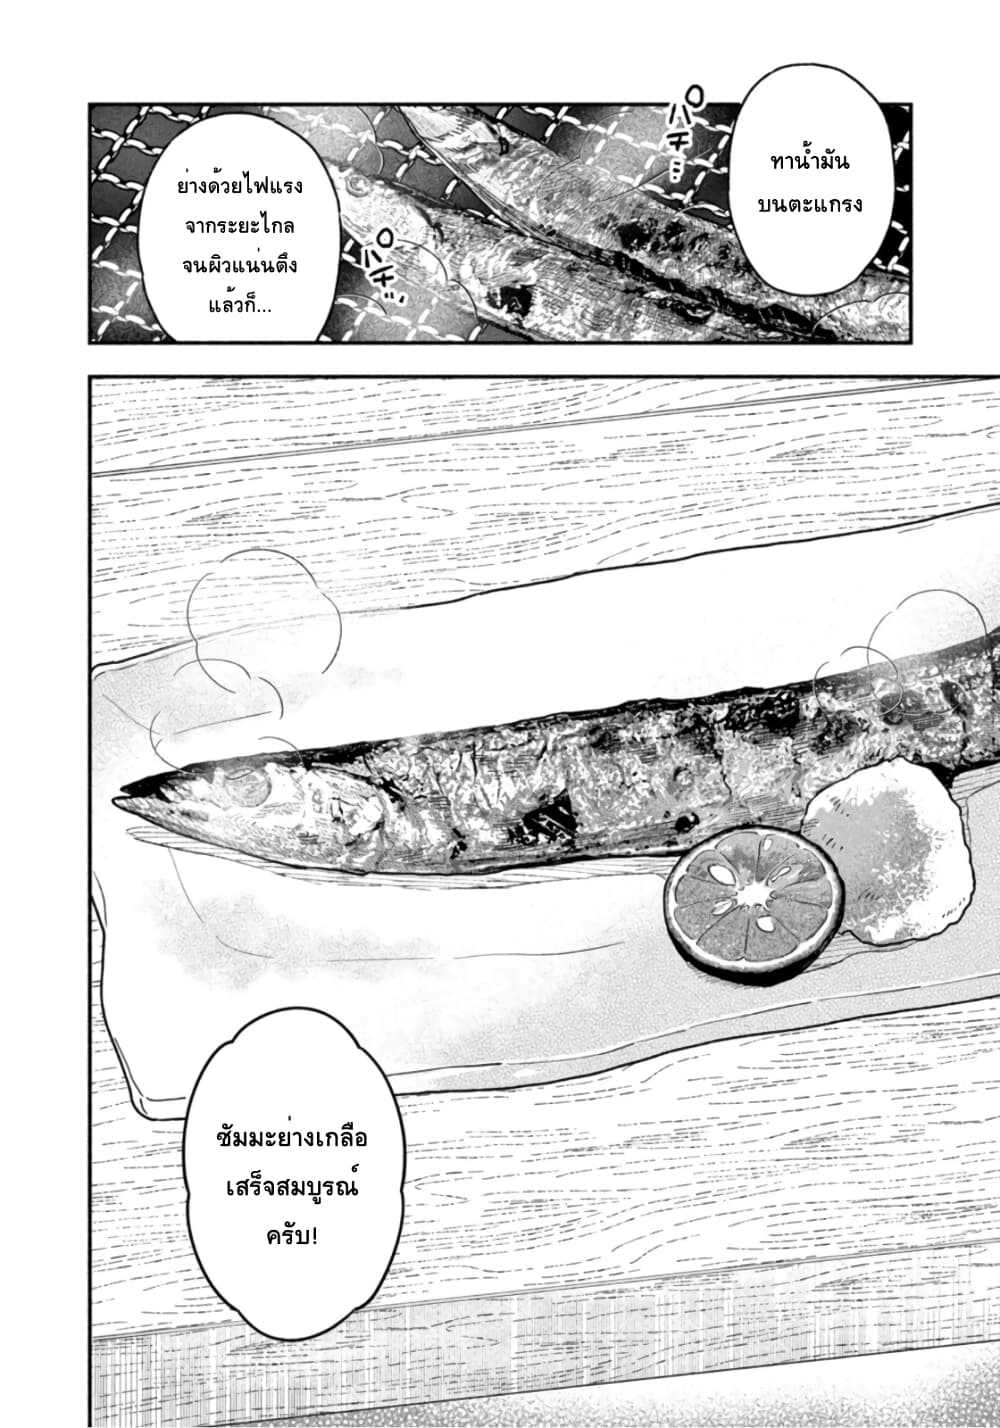 Yaiteru Futari มนต์รักเตาย่าง 43-มาย่างปลาซัมมะด้วยชุดฤดูใบไม้ร่วงกันเถอะ